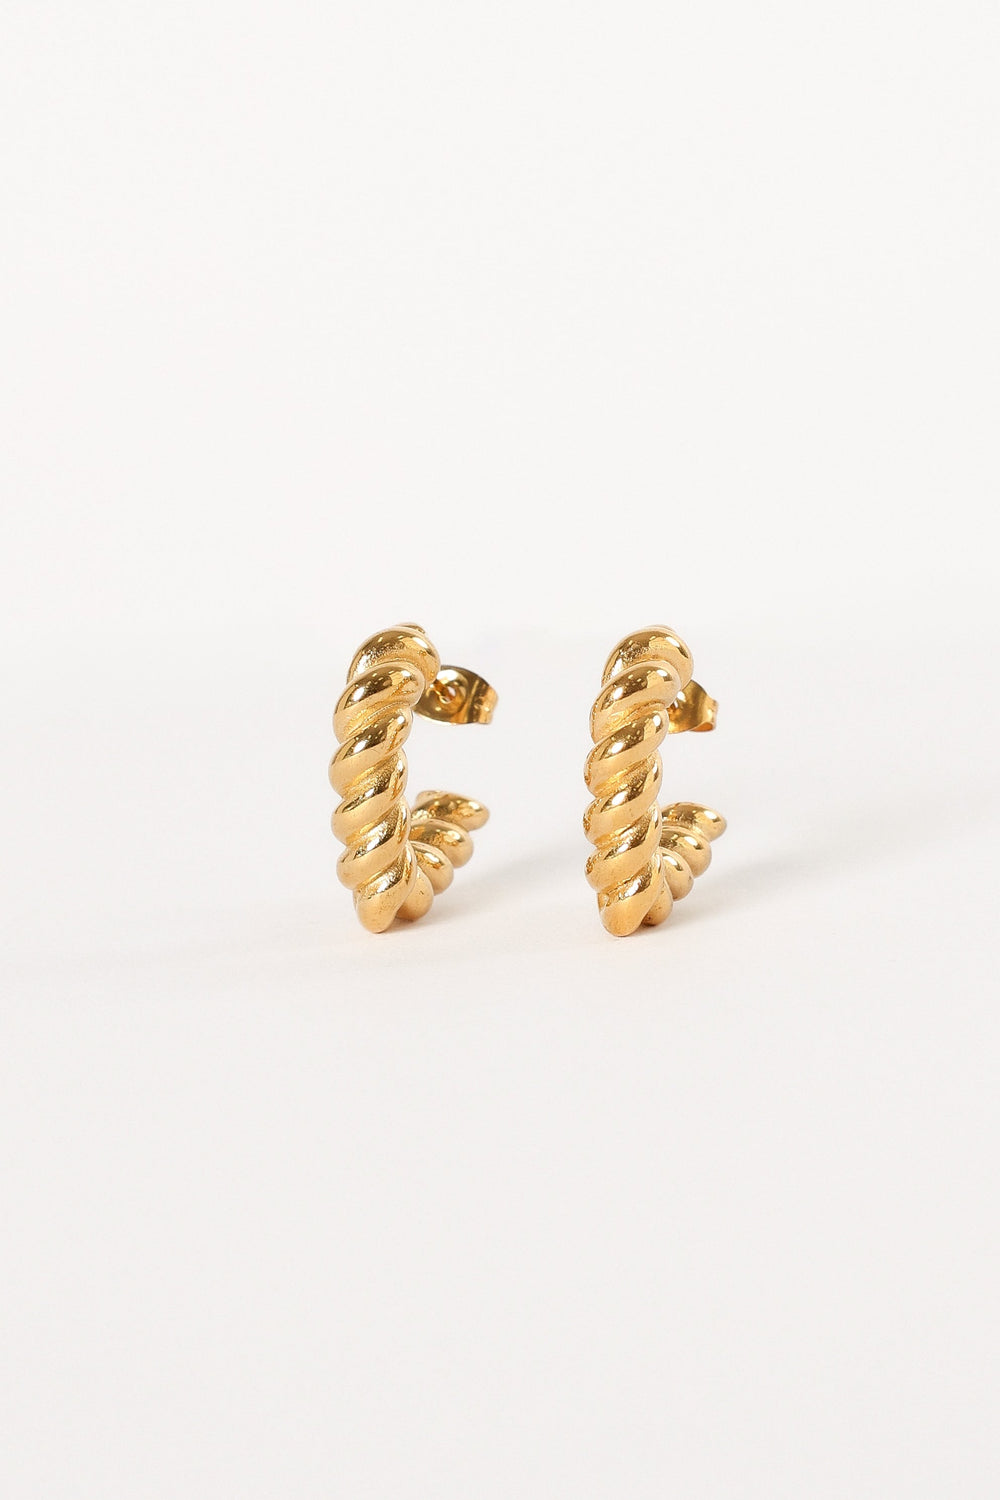 ACCESSORIES Loella Earrings - Gold